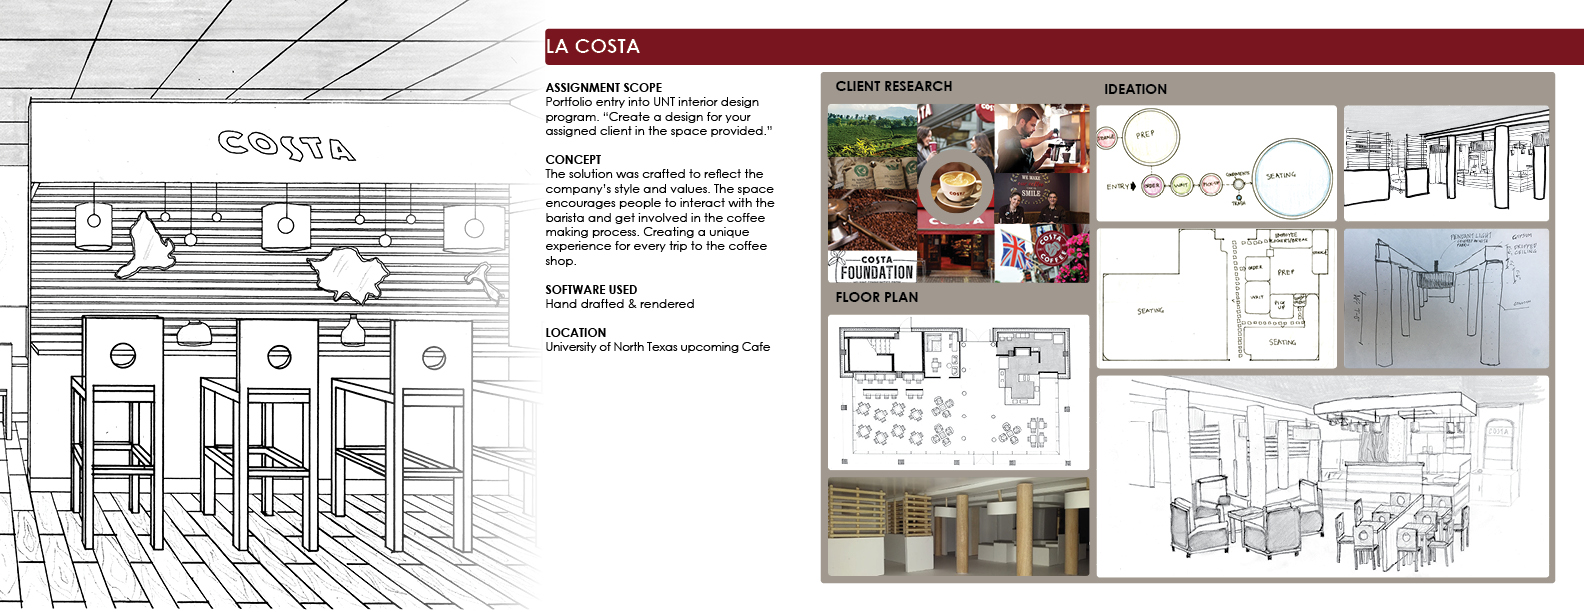 La Costa - Café designs 